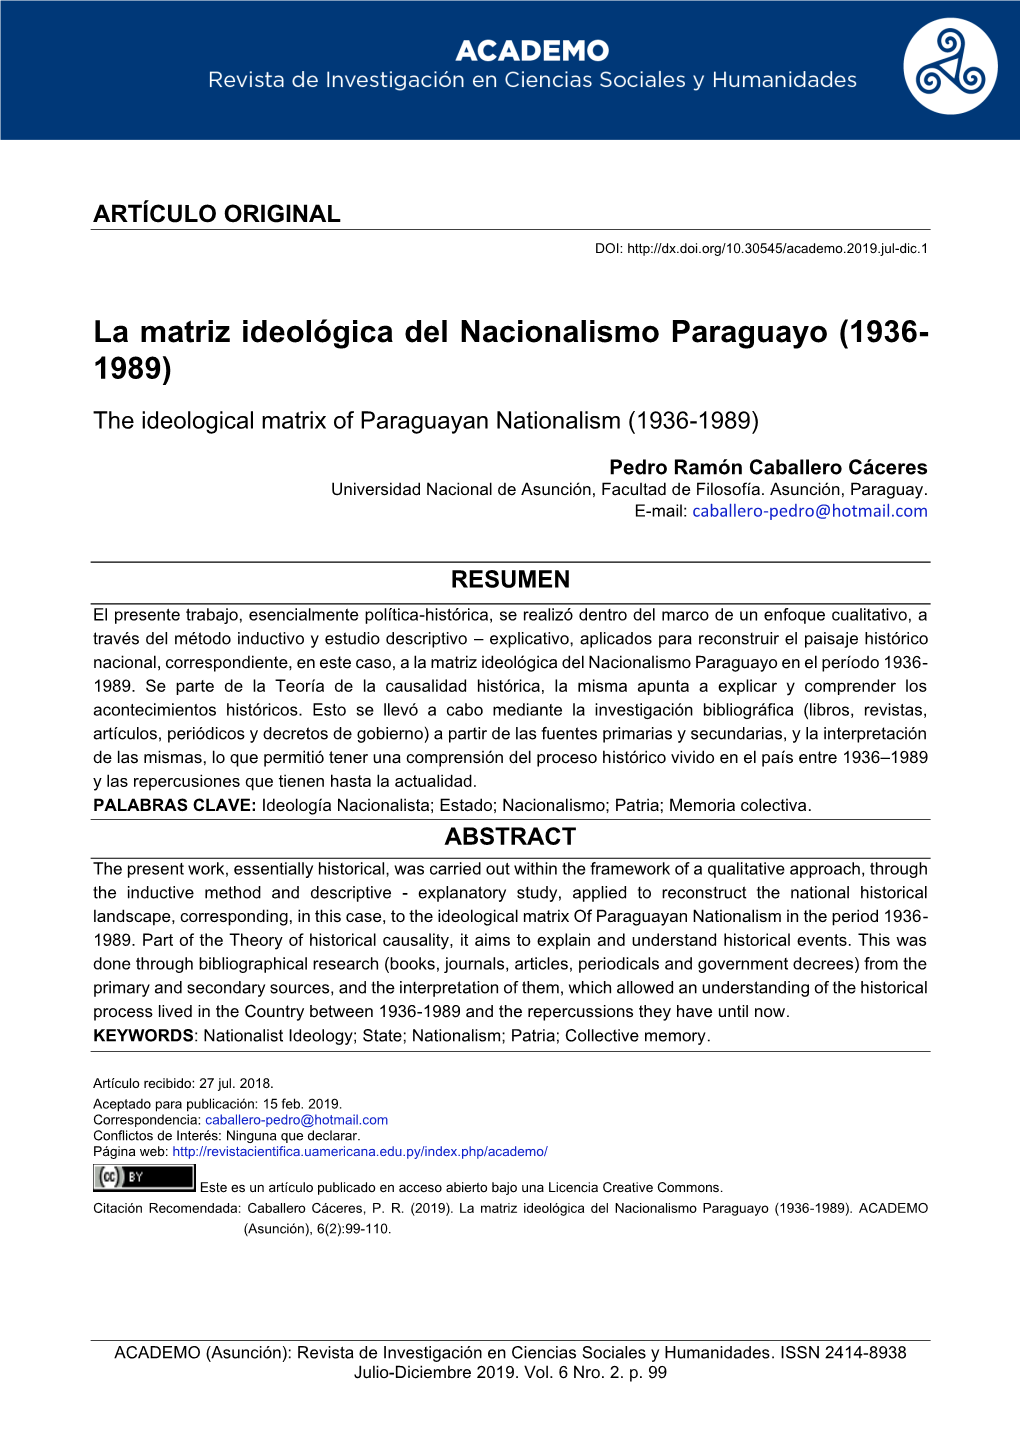 La Matriz Ideológica Del Nacionalismo Paraguayo (1936- 1989)